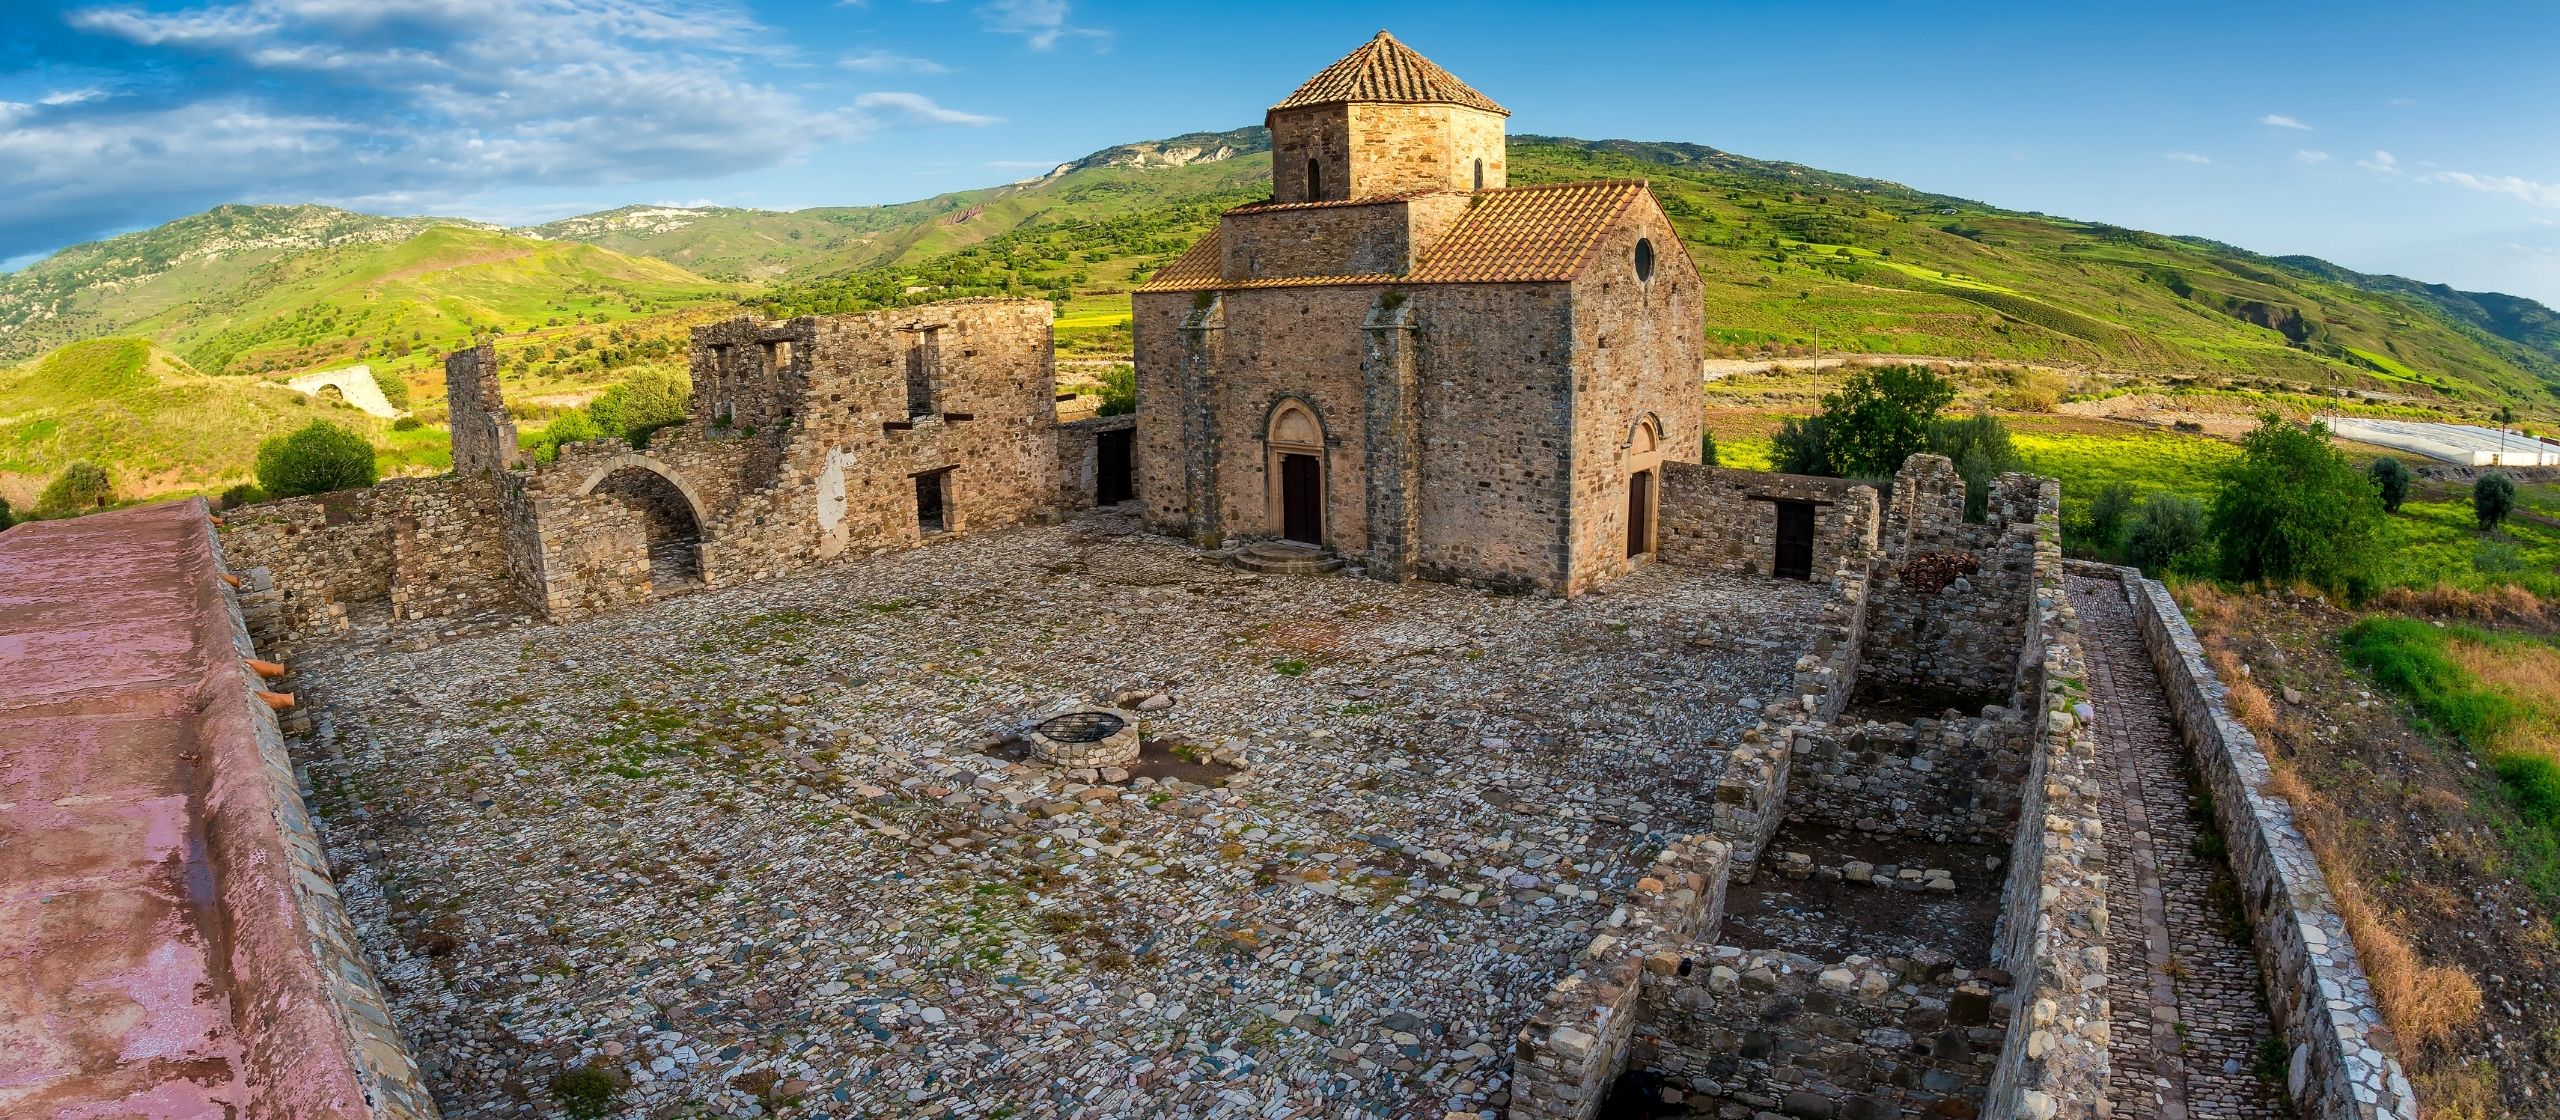 Panagia tou Sinti Monastery in Cyprus